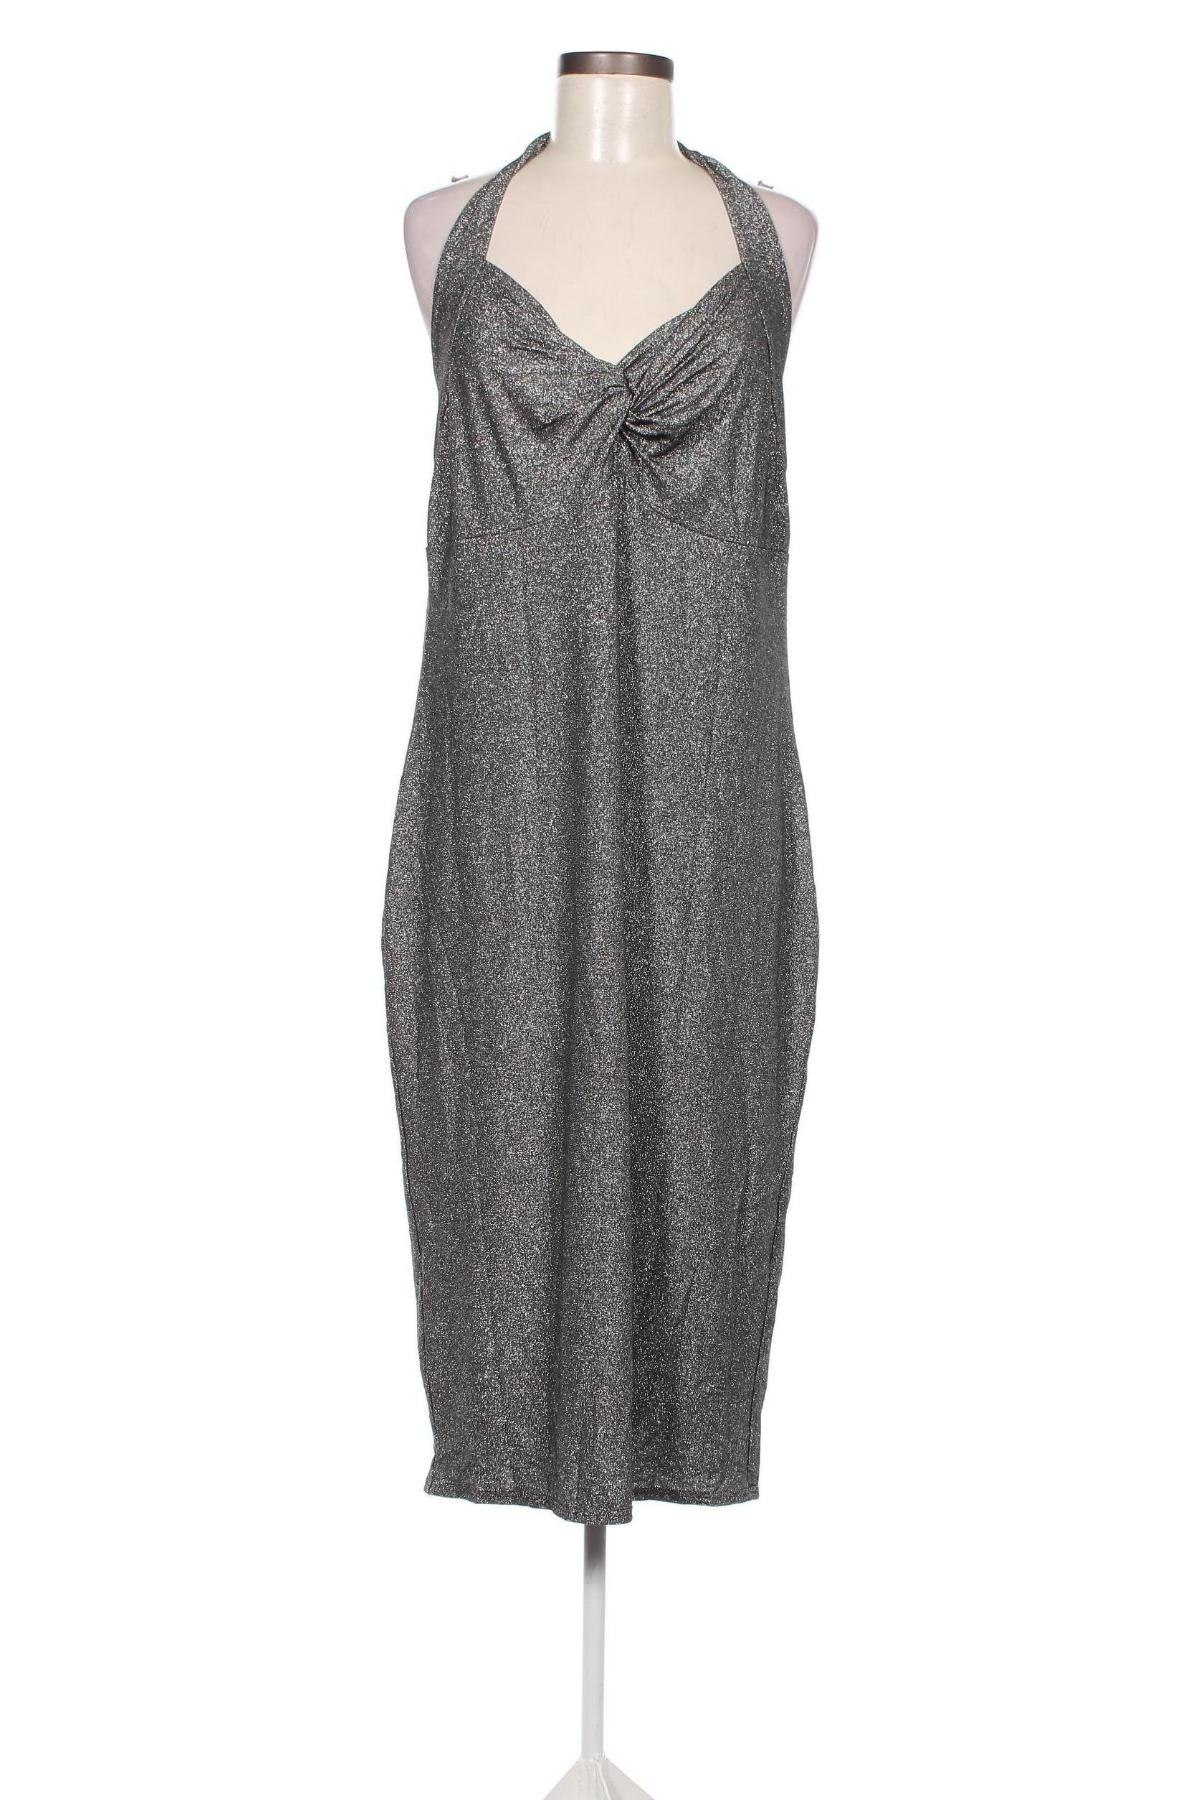 Φόρεμα Lindy Bop, Μέγεθος XL, Χρώμα Γκρί, Τιμή 9,53 €